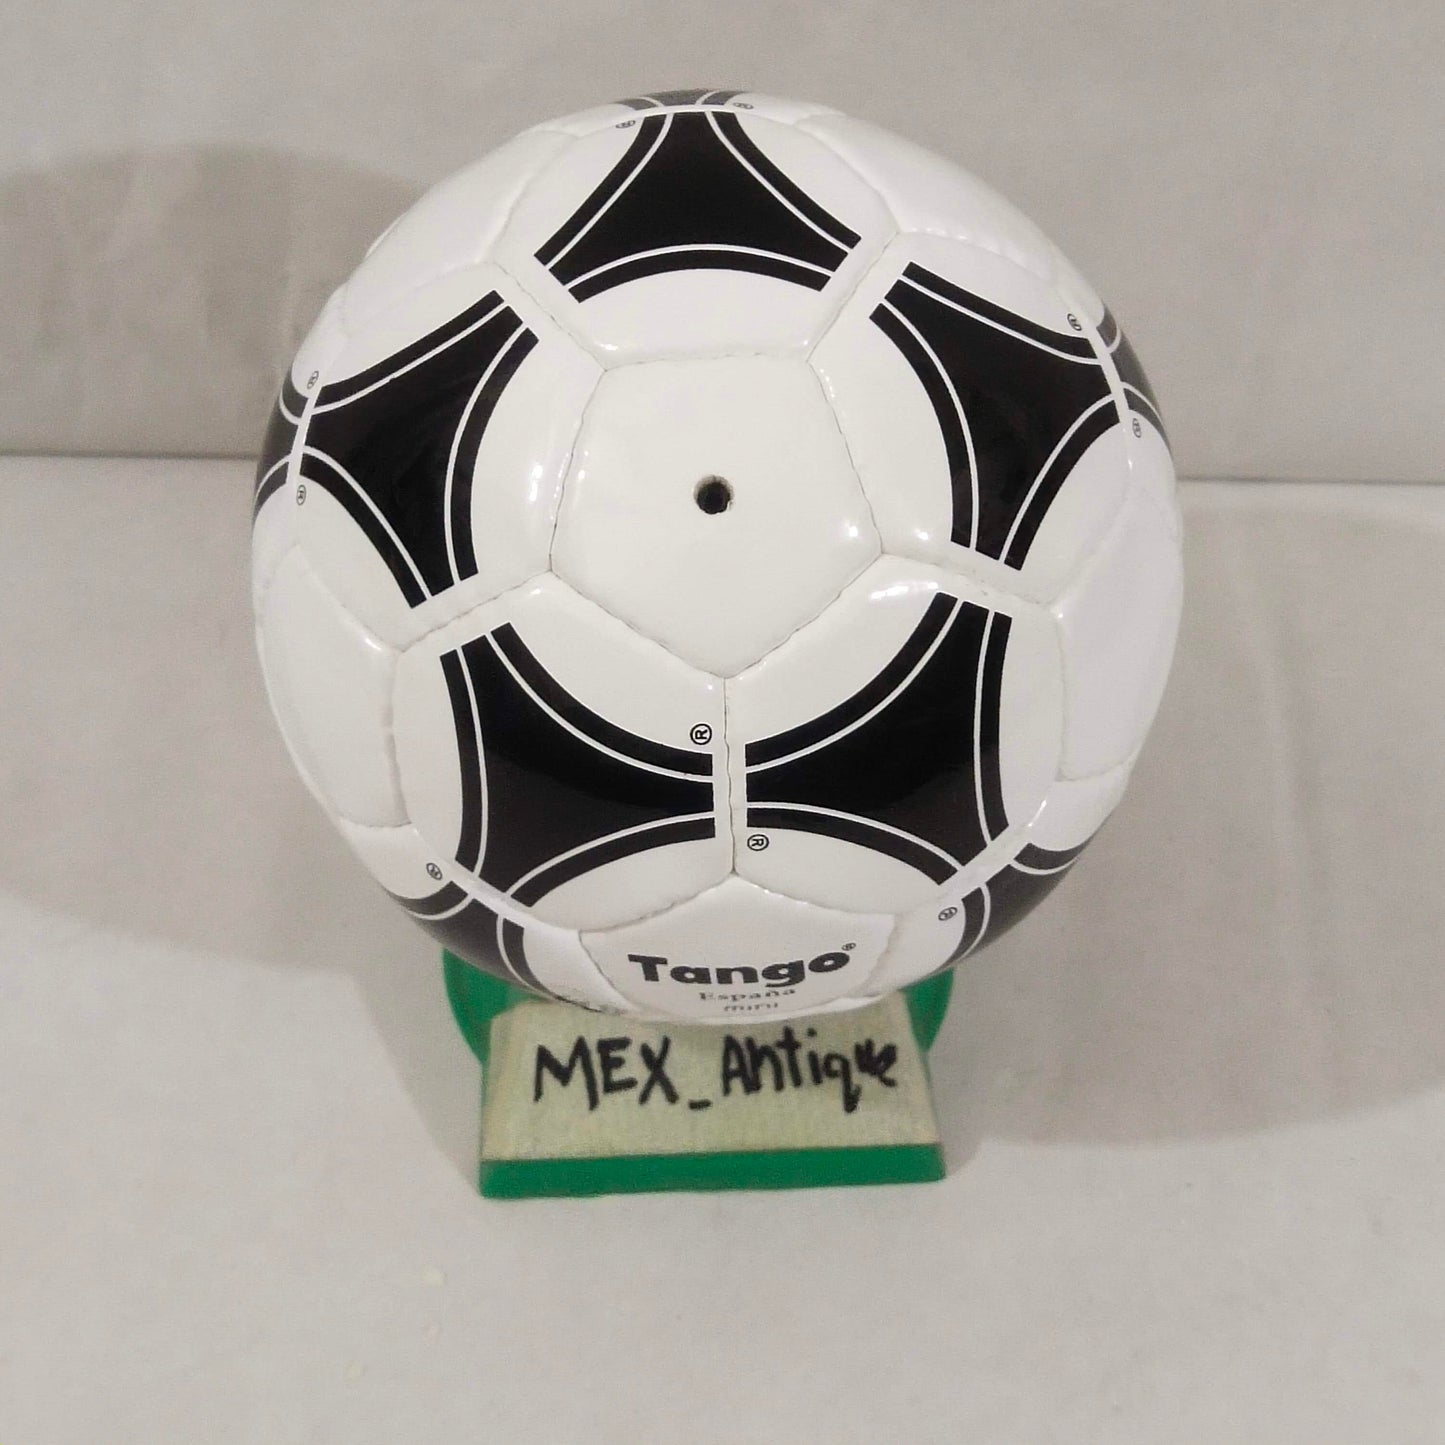 Adidas Tango Espana mini | FIFA World Cup 1982 | Mini Ball 04